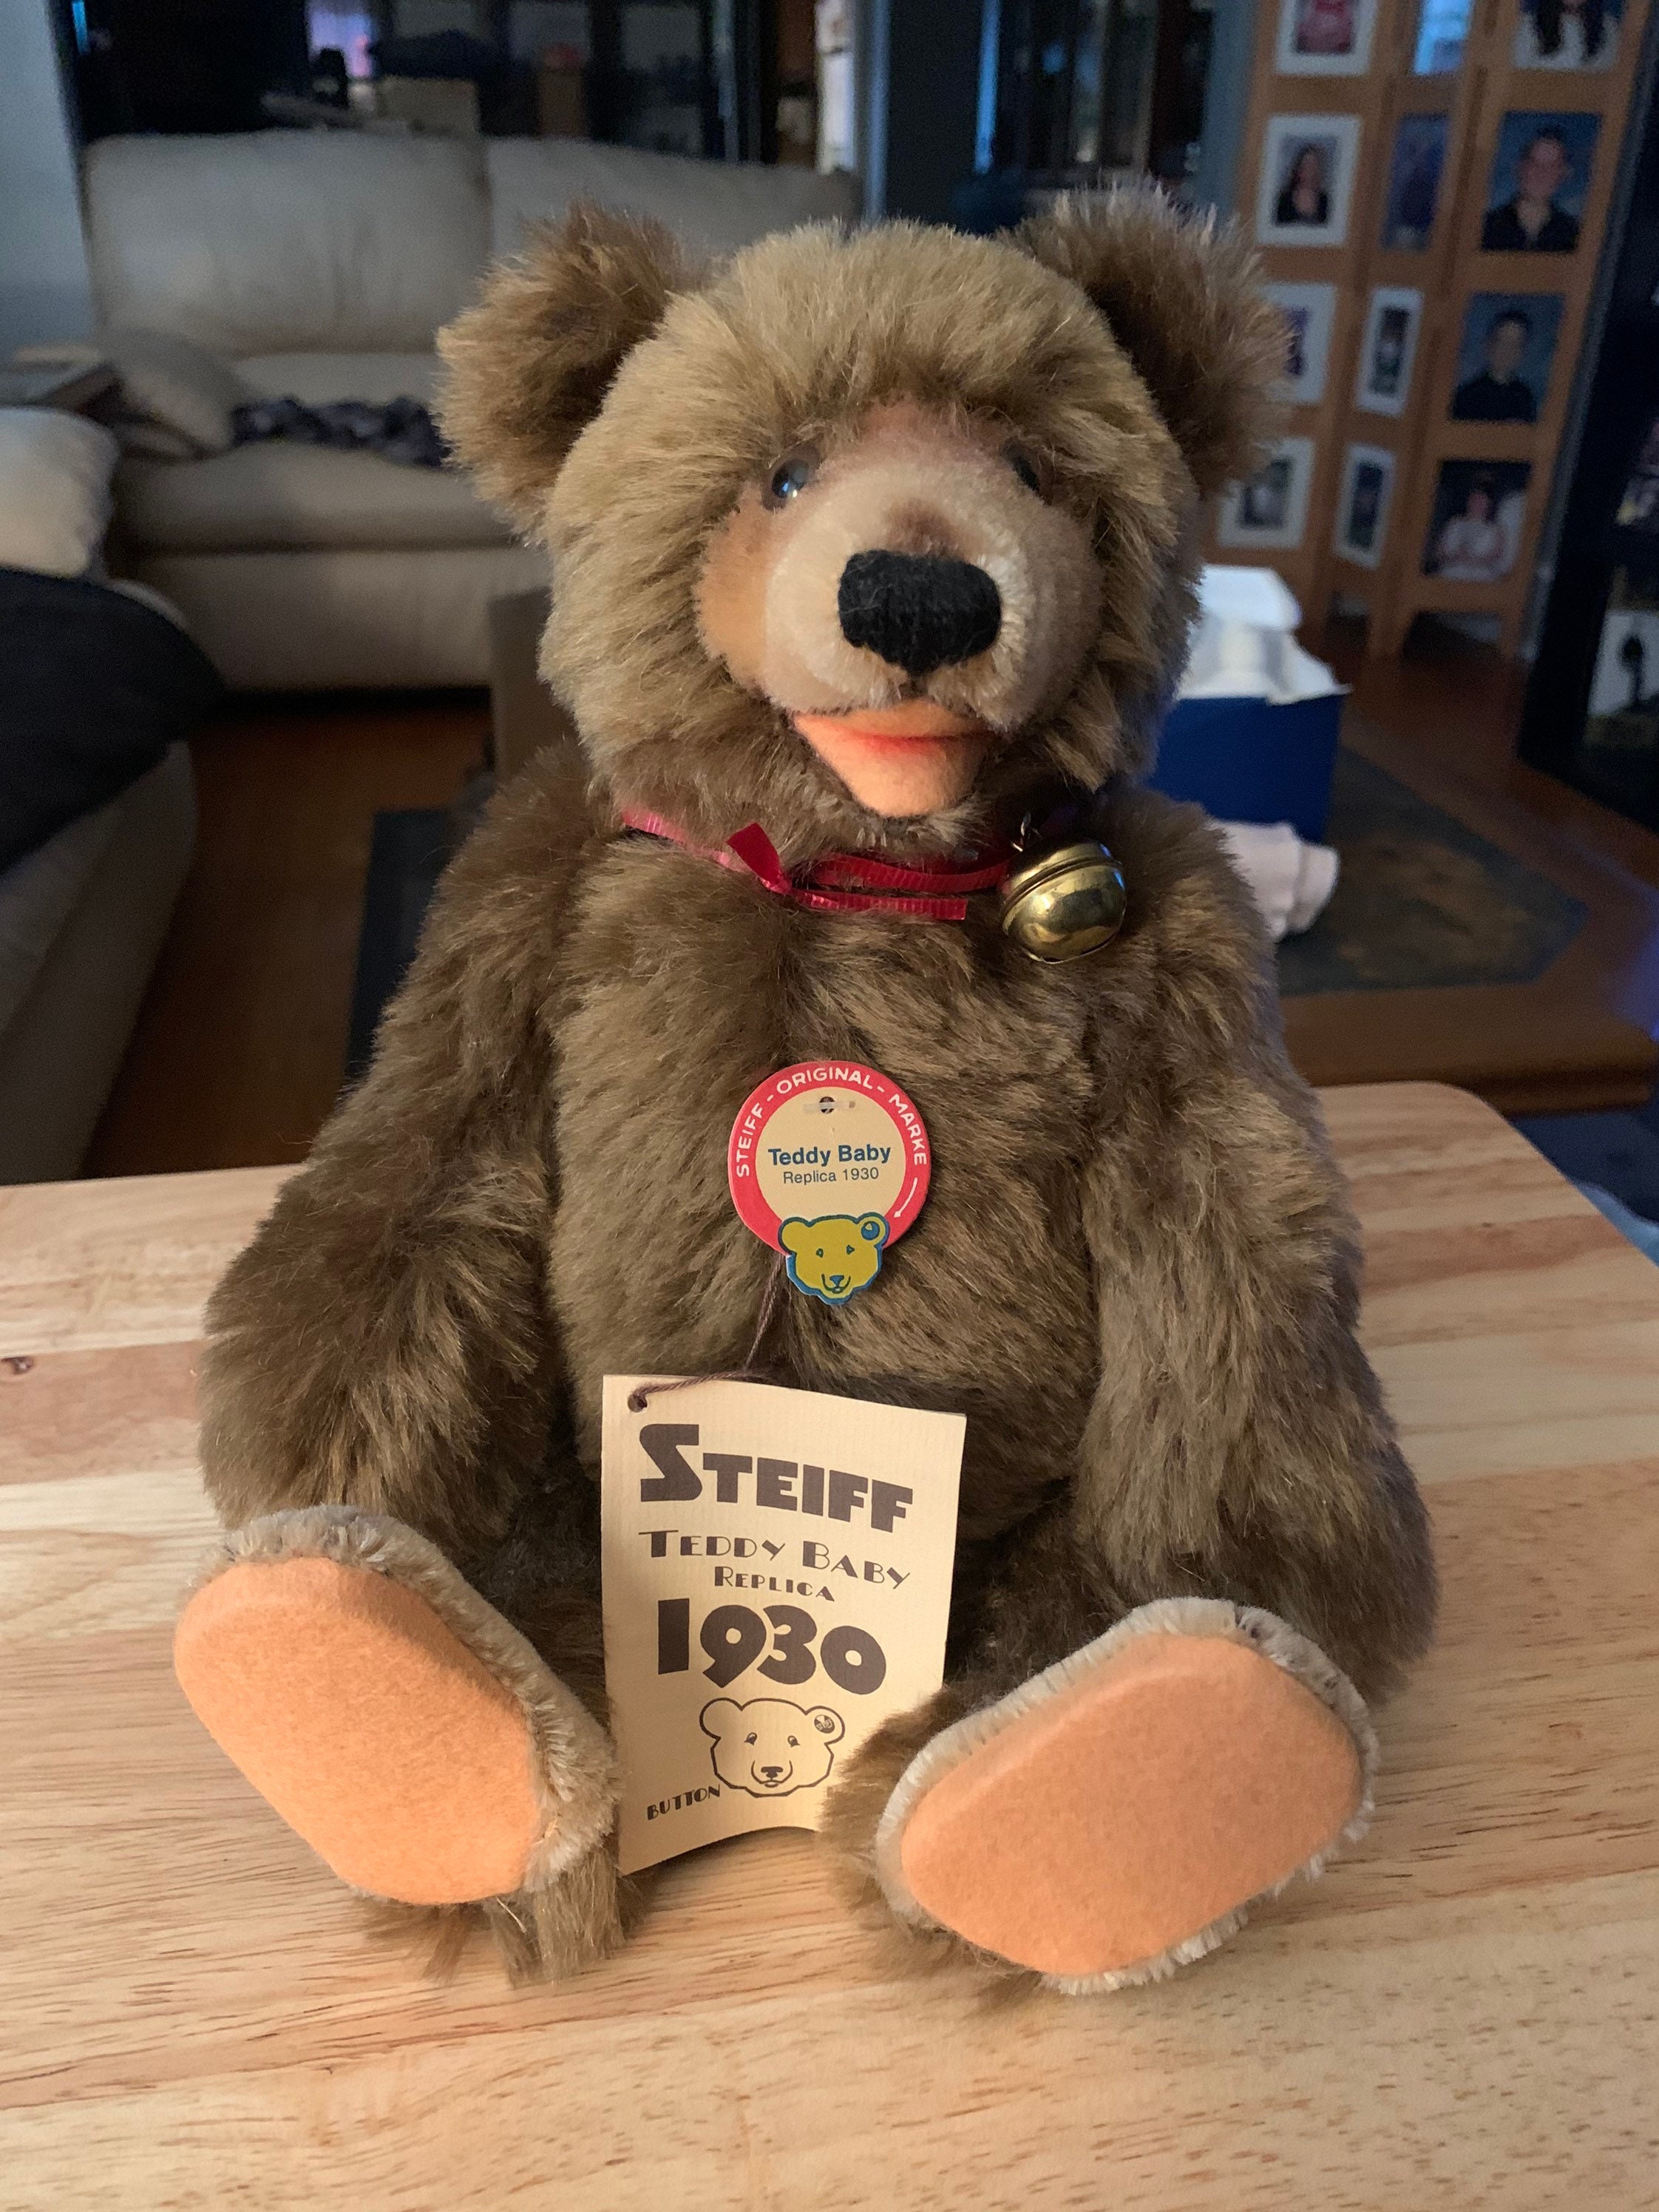 Steiff: The Teddy Bear Empire